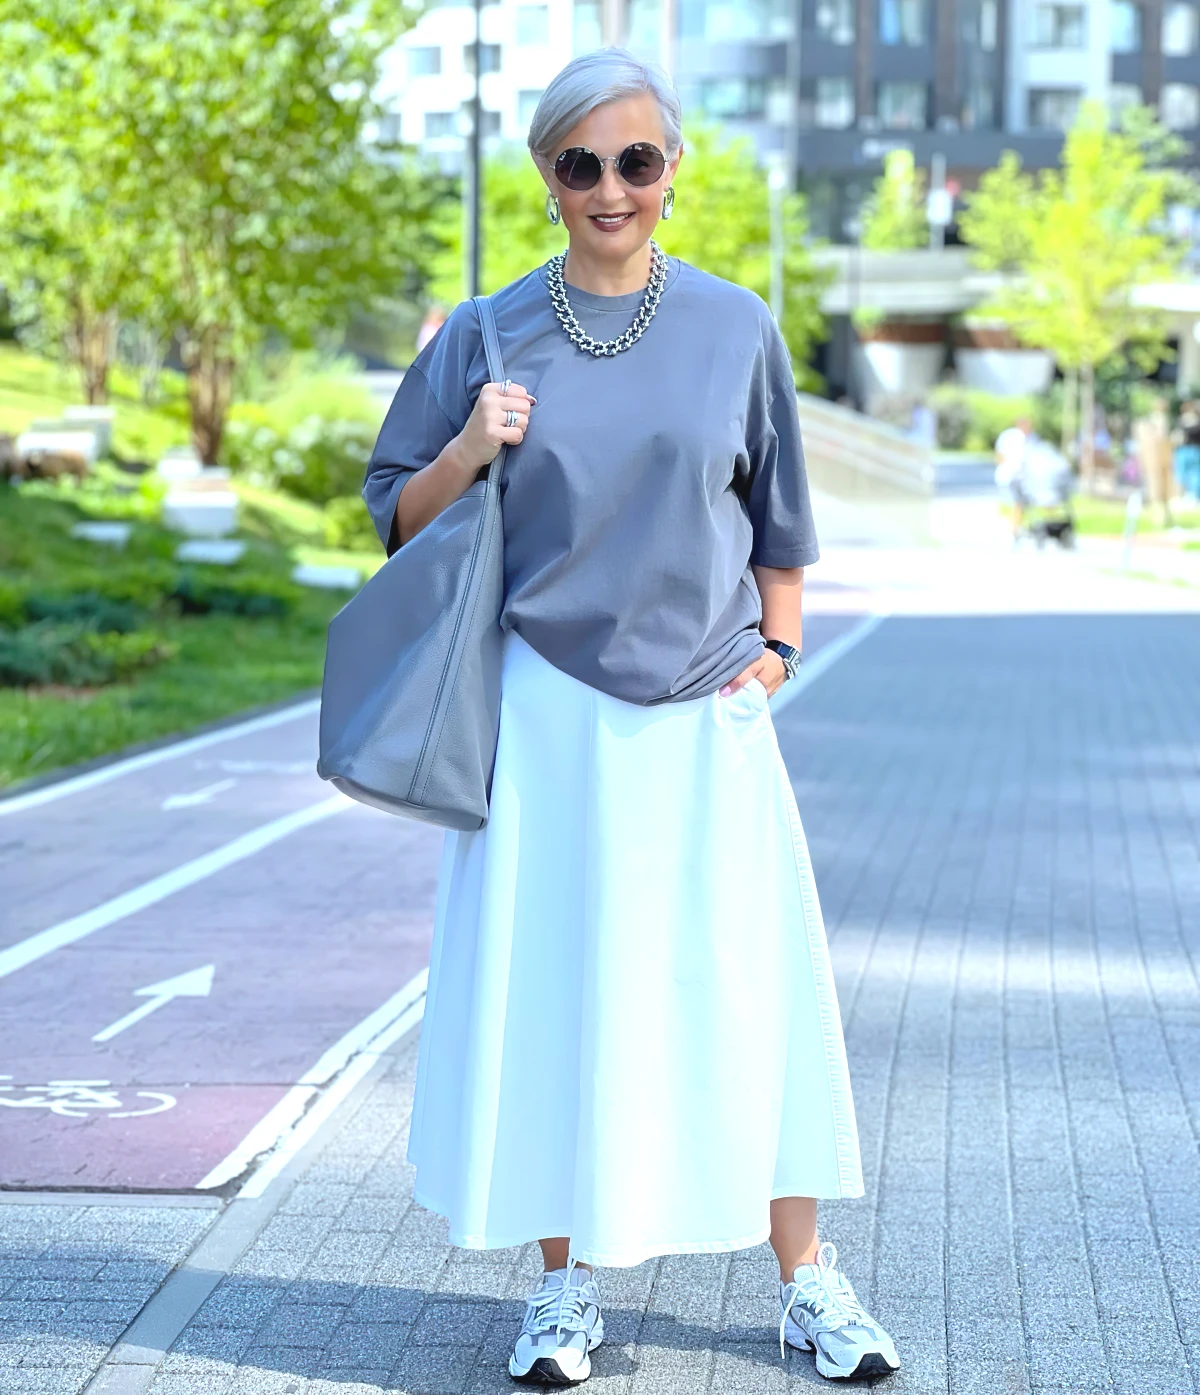 comment porter une jupe longue avec des baskets mode femme 60 ans